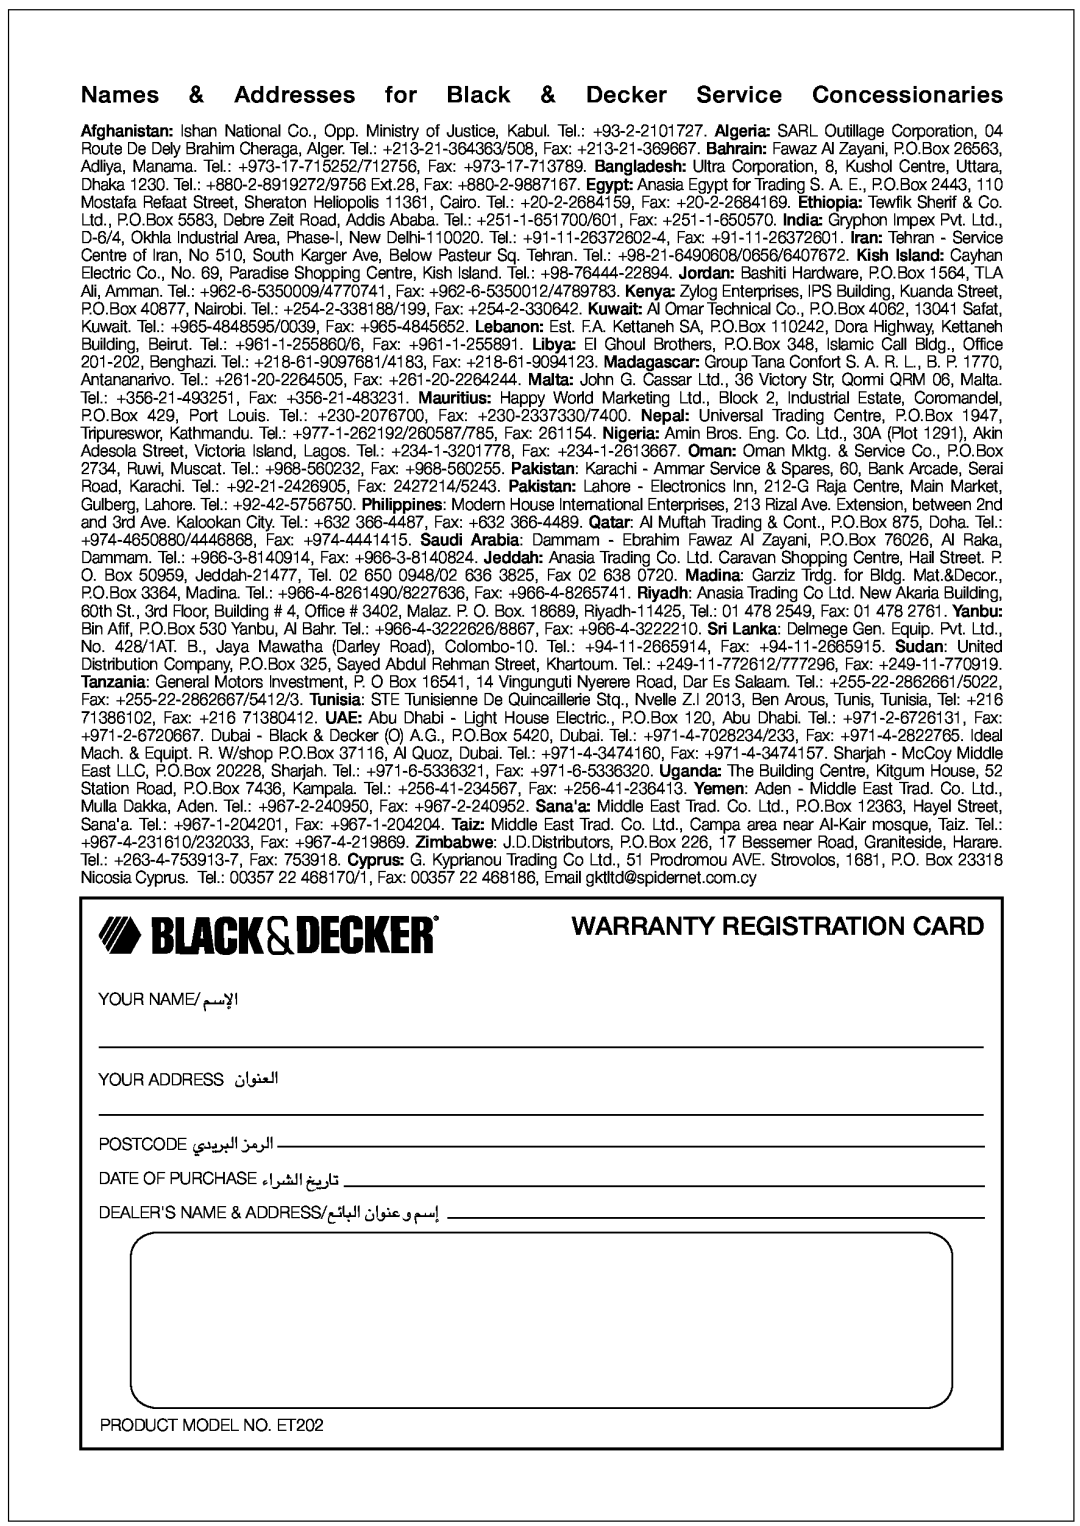 Black & Decker ET202 manual Warranty Registration Card, «ùßr, FMu«Ê∞«, Uzl∞∂« ´Mu«Ê Ë ßr≈ 